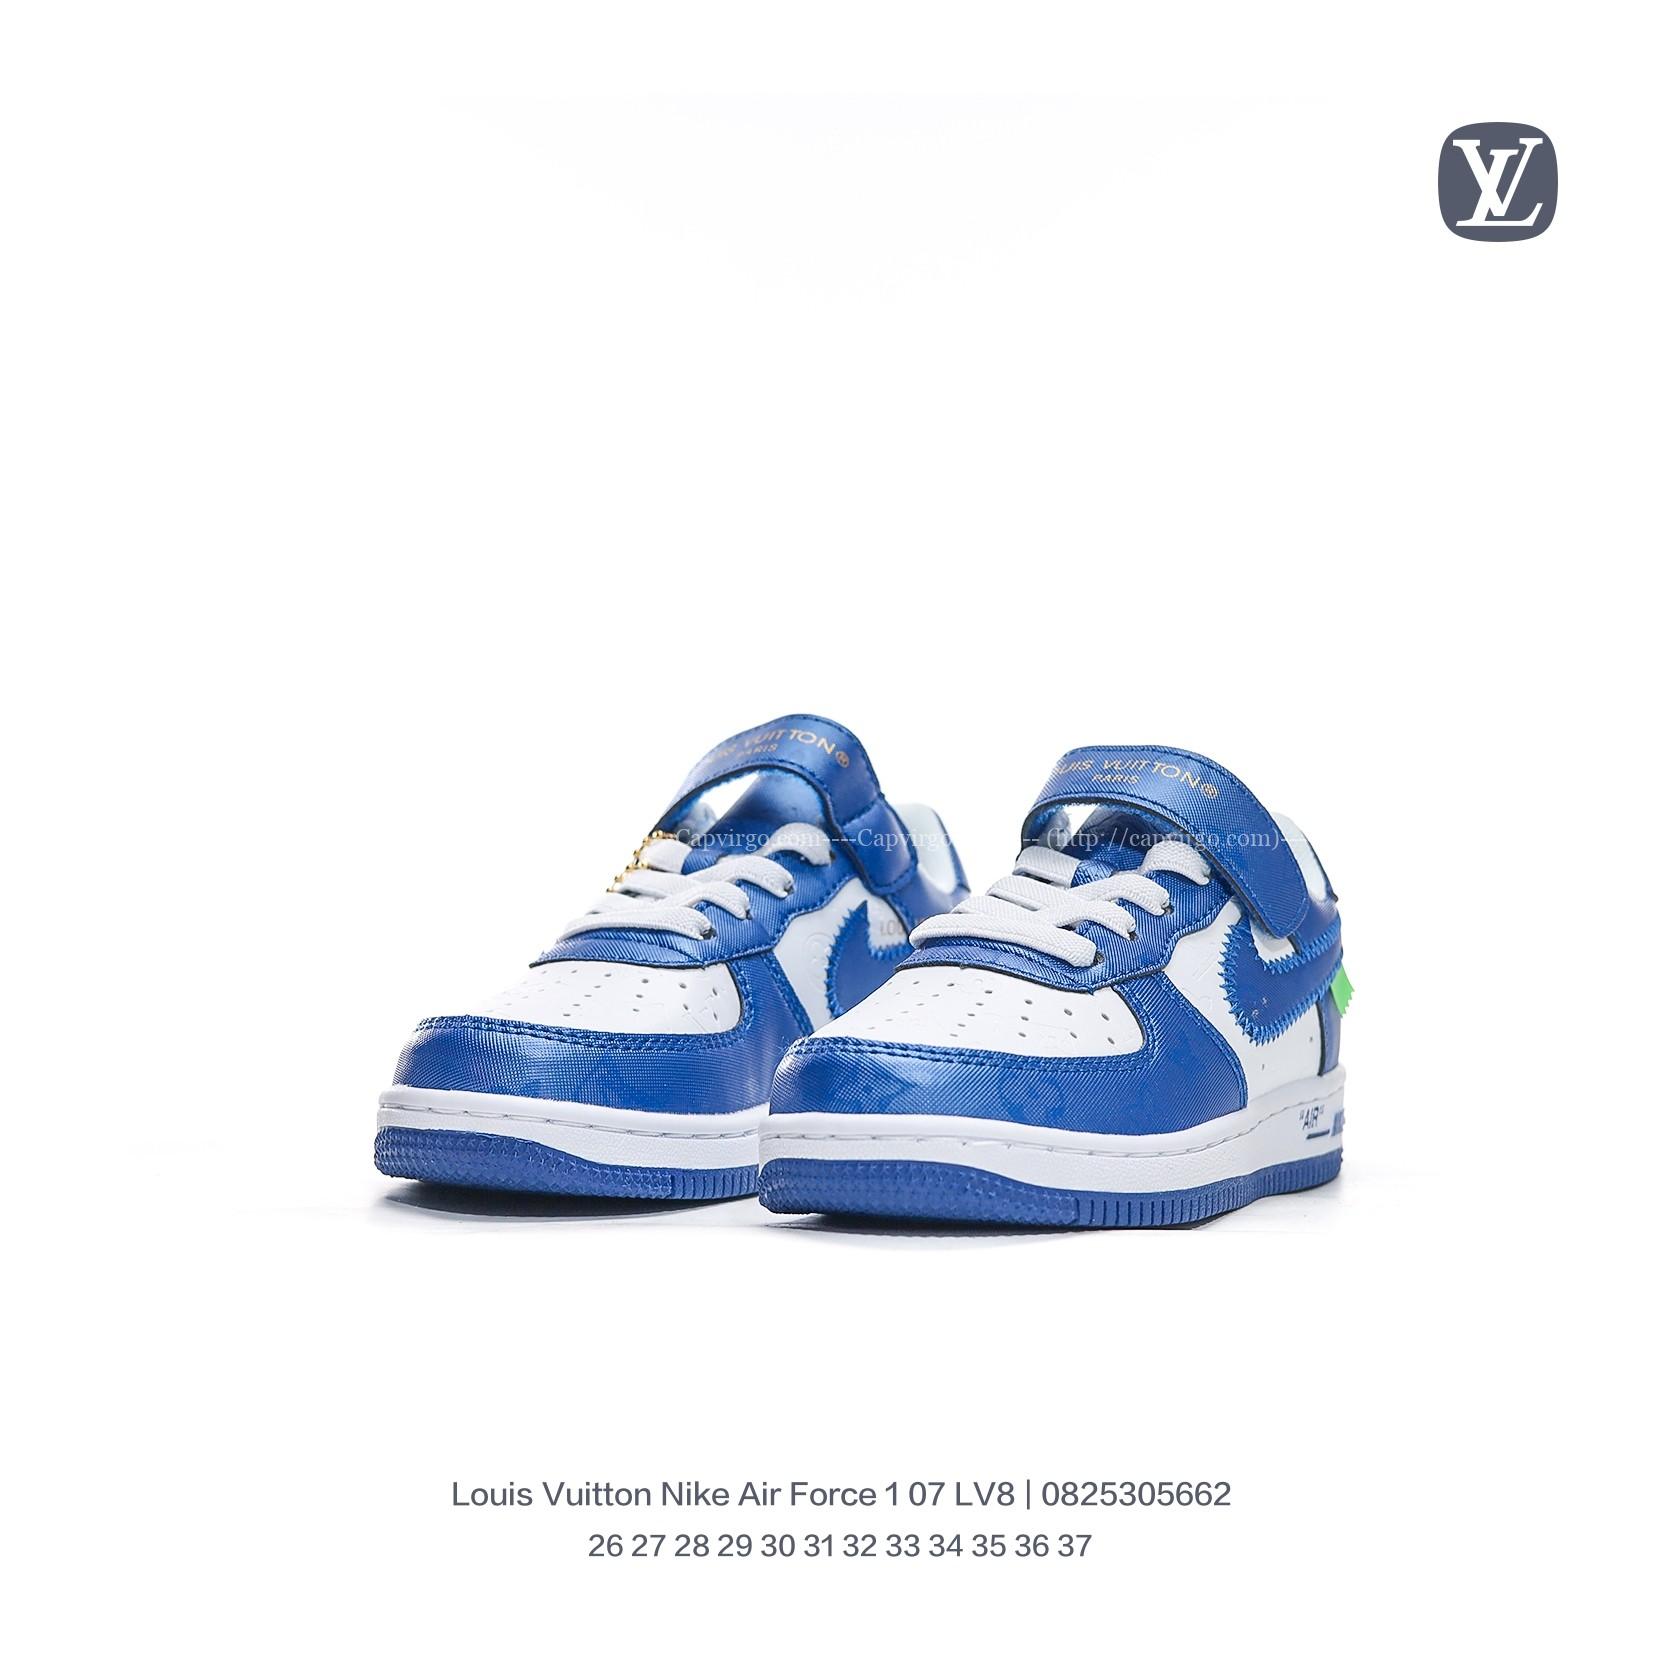 Giày Nike Air Force 1 07 x Louis Vuitton trẻ em màu xanh nước biển